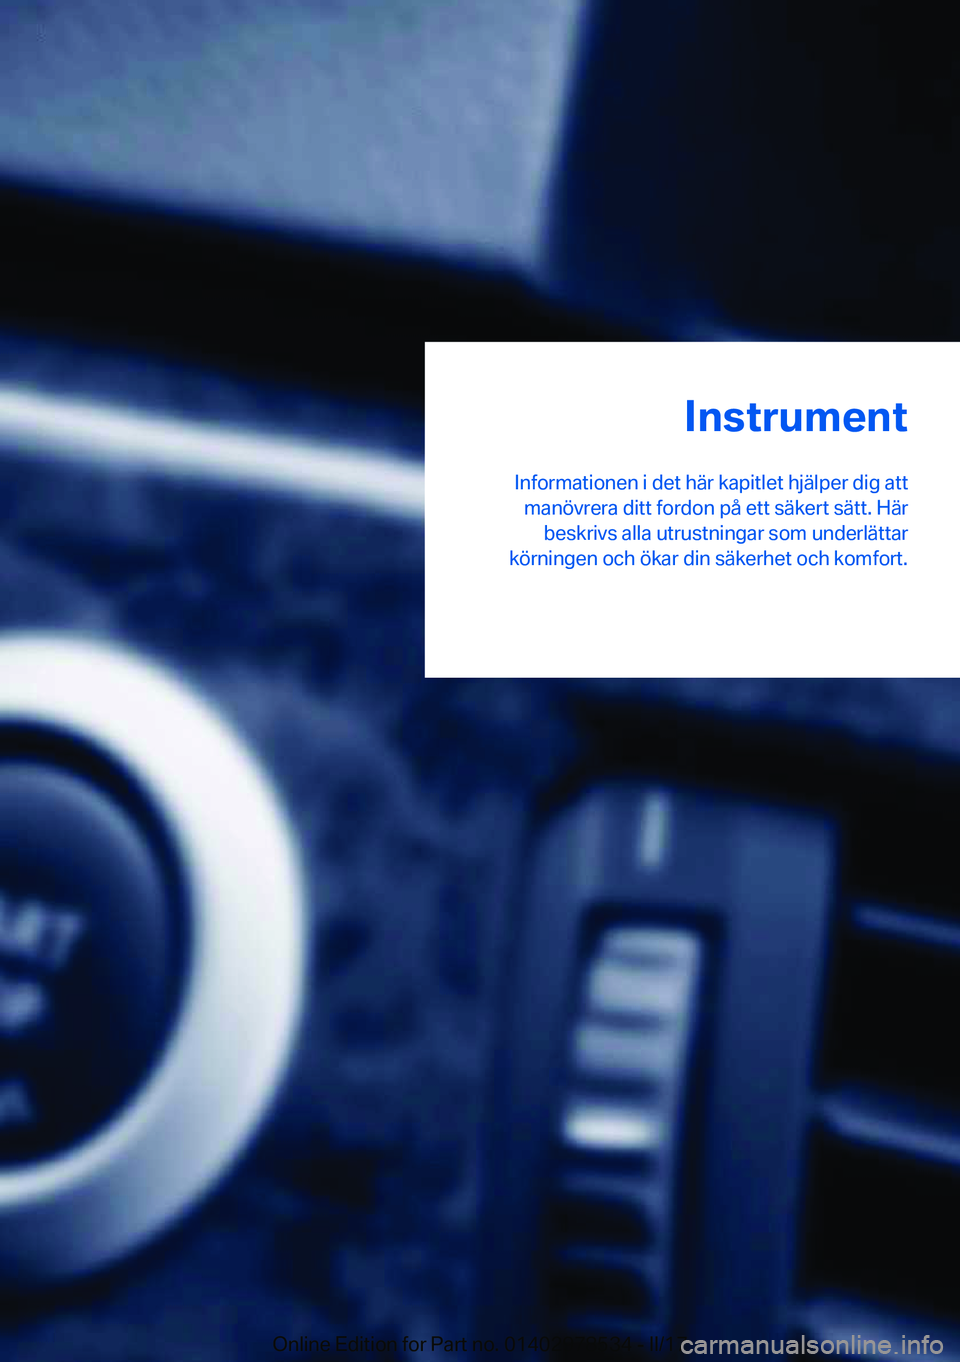 BMW X6 M 2017  InstruktionsbÖcker (in Swedish) �I�n�s�t�r�u�m�e�n�t
�I�n�f�o�r�m�a�t�i�o�n�e�n� �i� �d�e�t� �h�ä�r� �k�a�p�i�t�l�e�t� �h�j�ä�l�p�e�r� �d�i�g� �a�t�t �m�a�n�ö�v�r�e�r�a� �d�i�t�t� �f�o�r�d�o�n� �p�å� �e�t�t� �s�ä�k�e�r�t� �s�ä